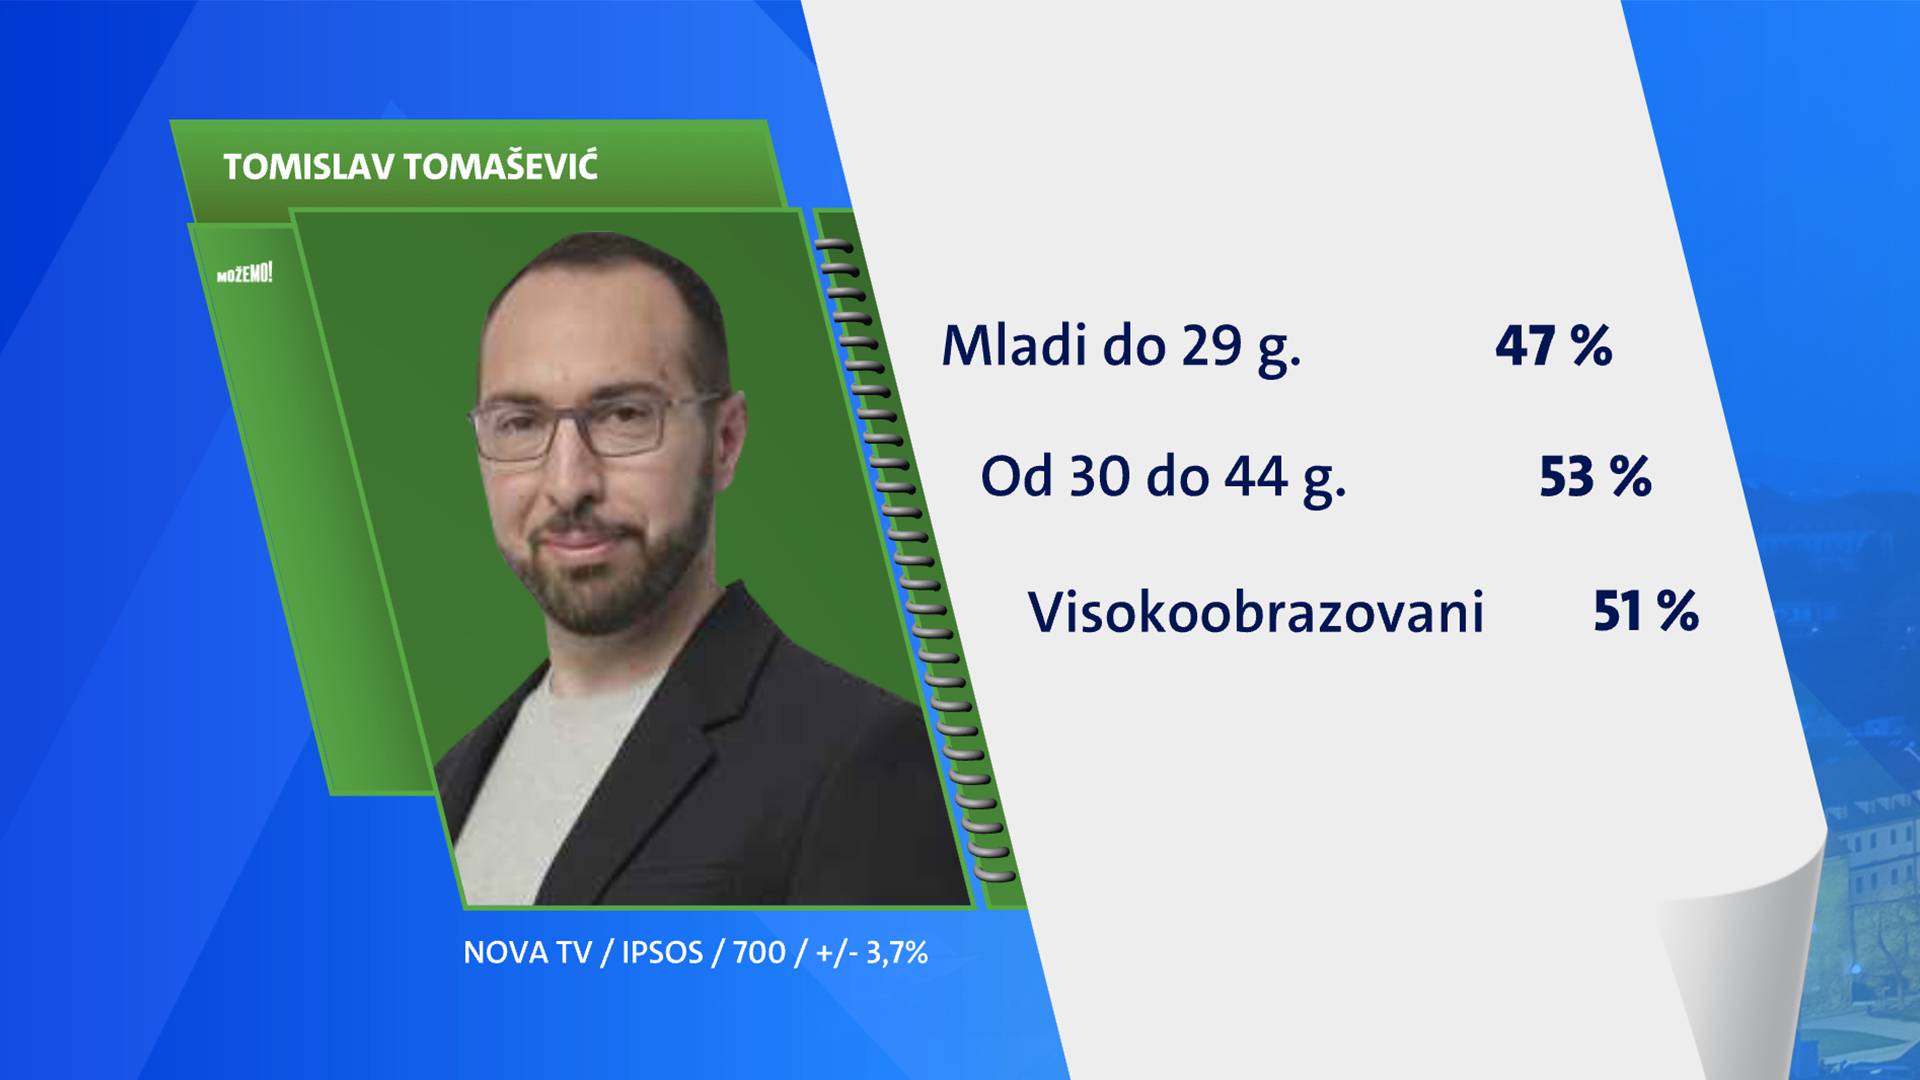 Tomašević uvjerljivo pobjeđuje, u Splitu zasad vodi Mihanović (HDZ), ali blizu mu je Puljak